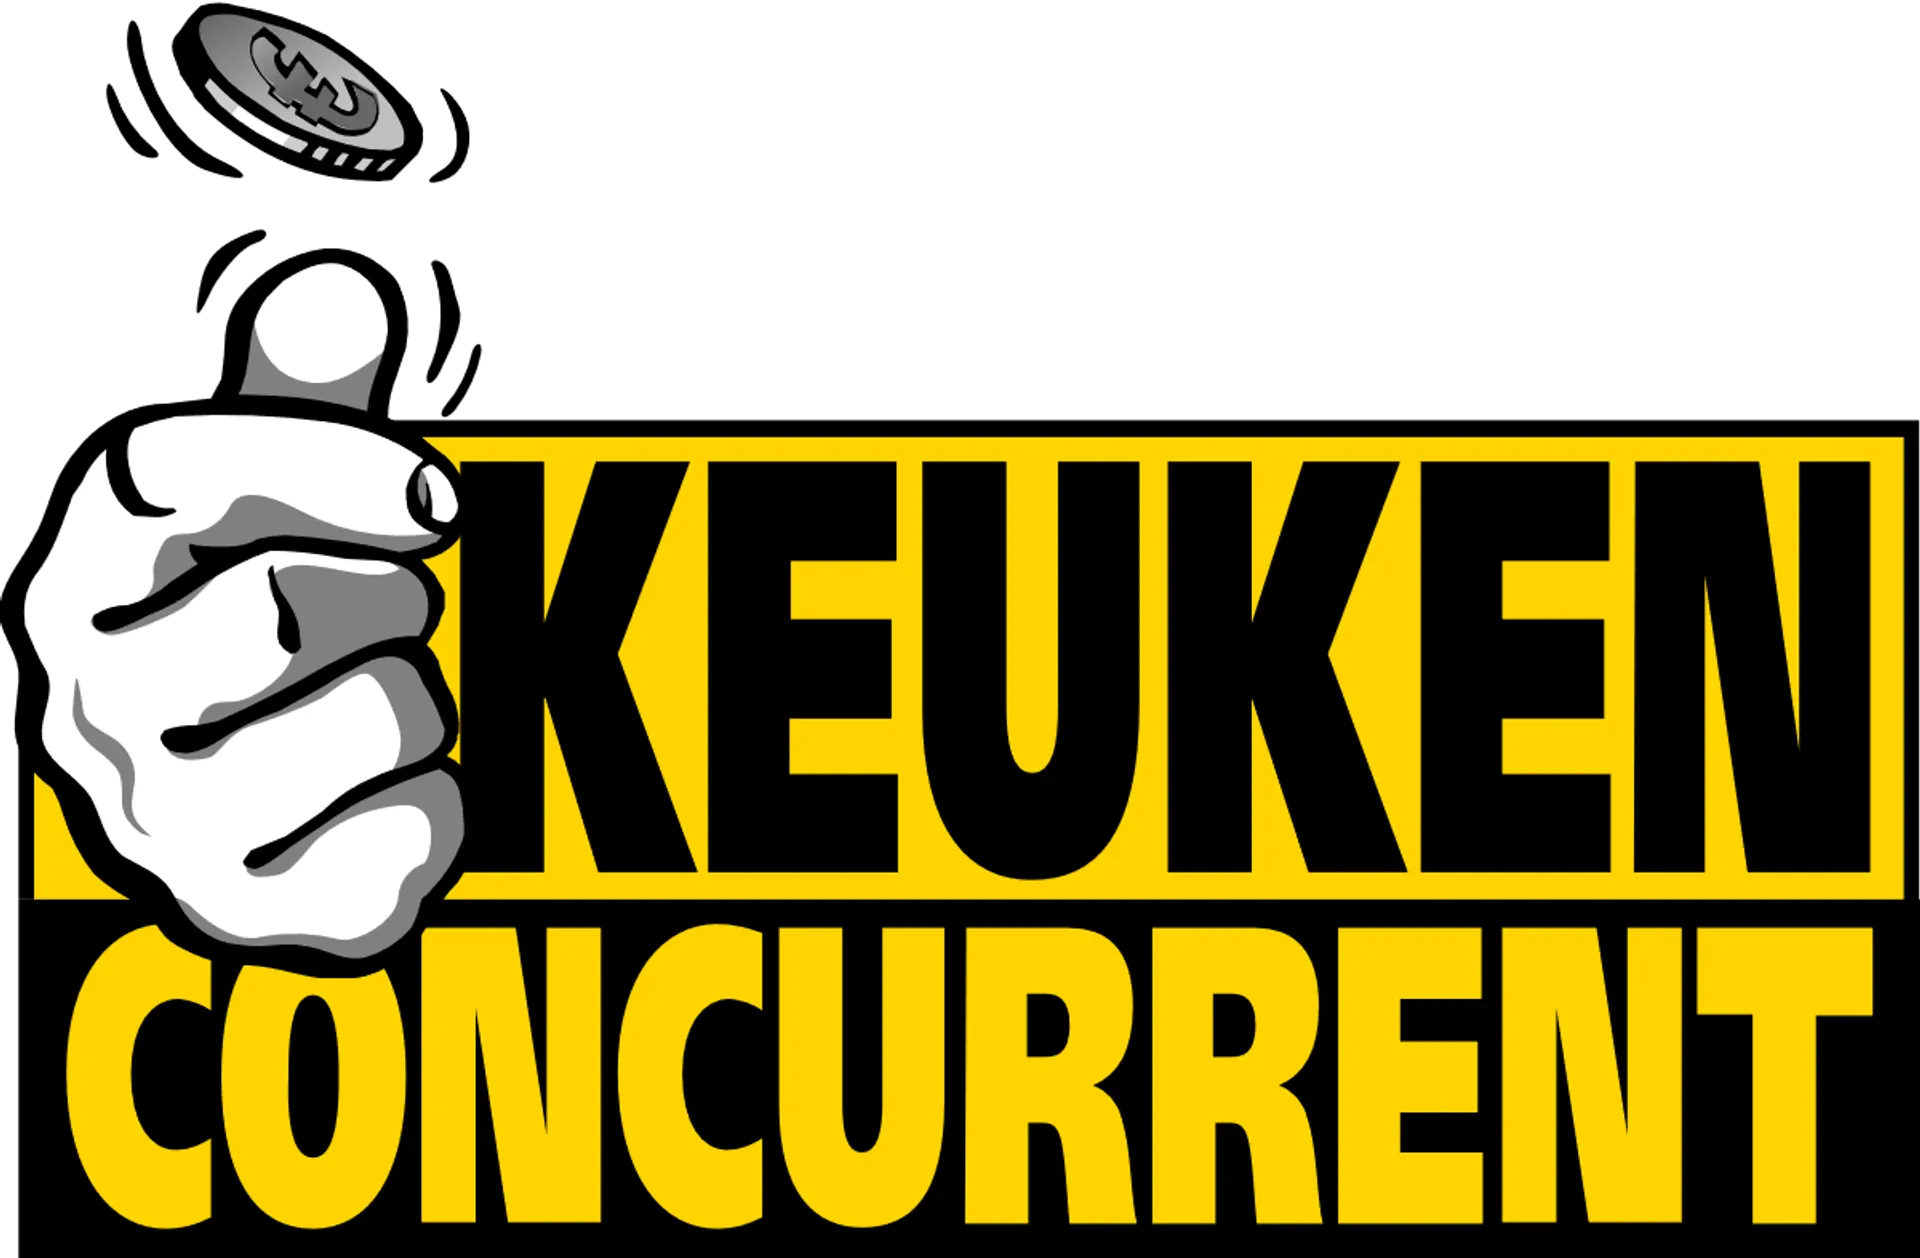 KEUKENCONCURRENT logo